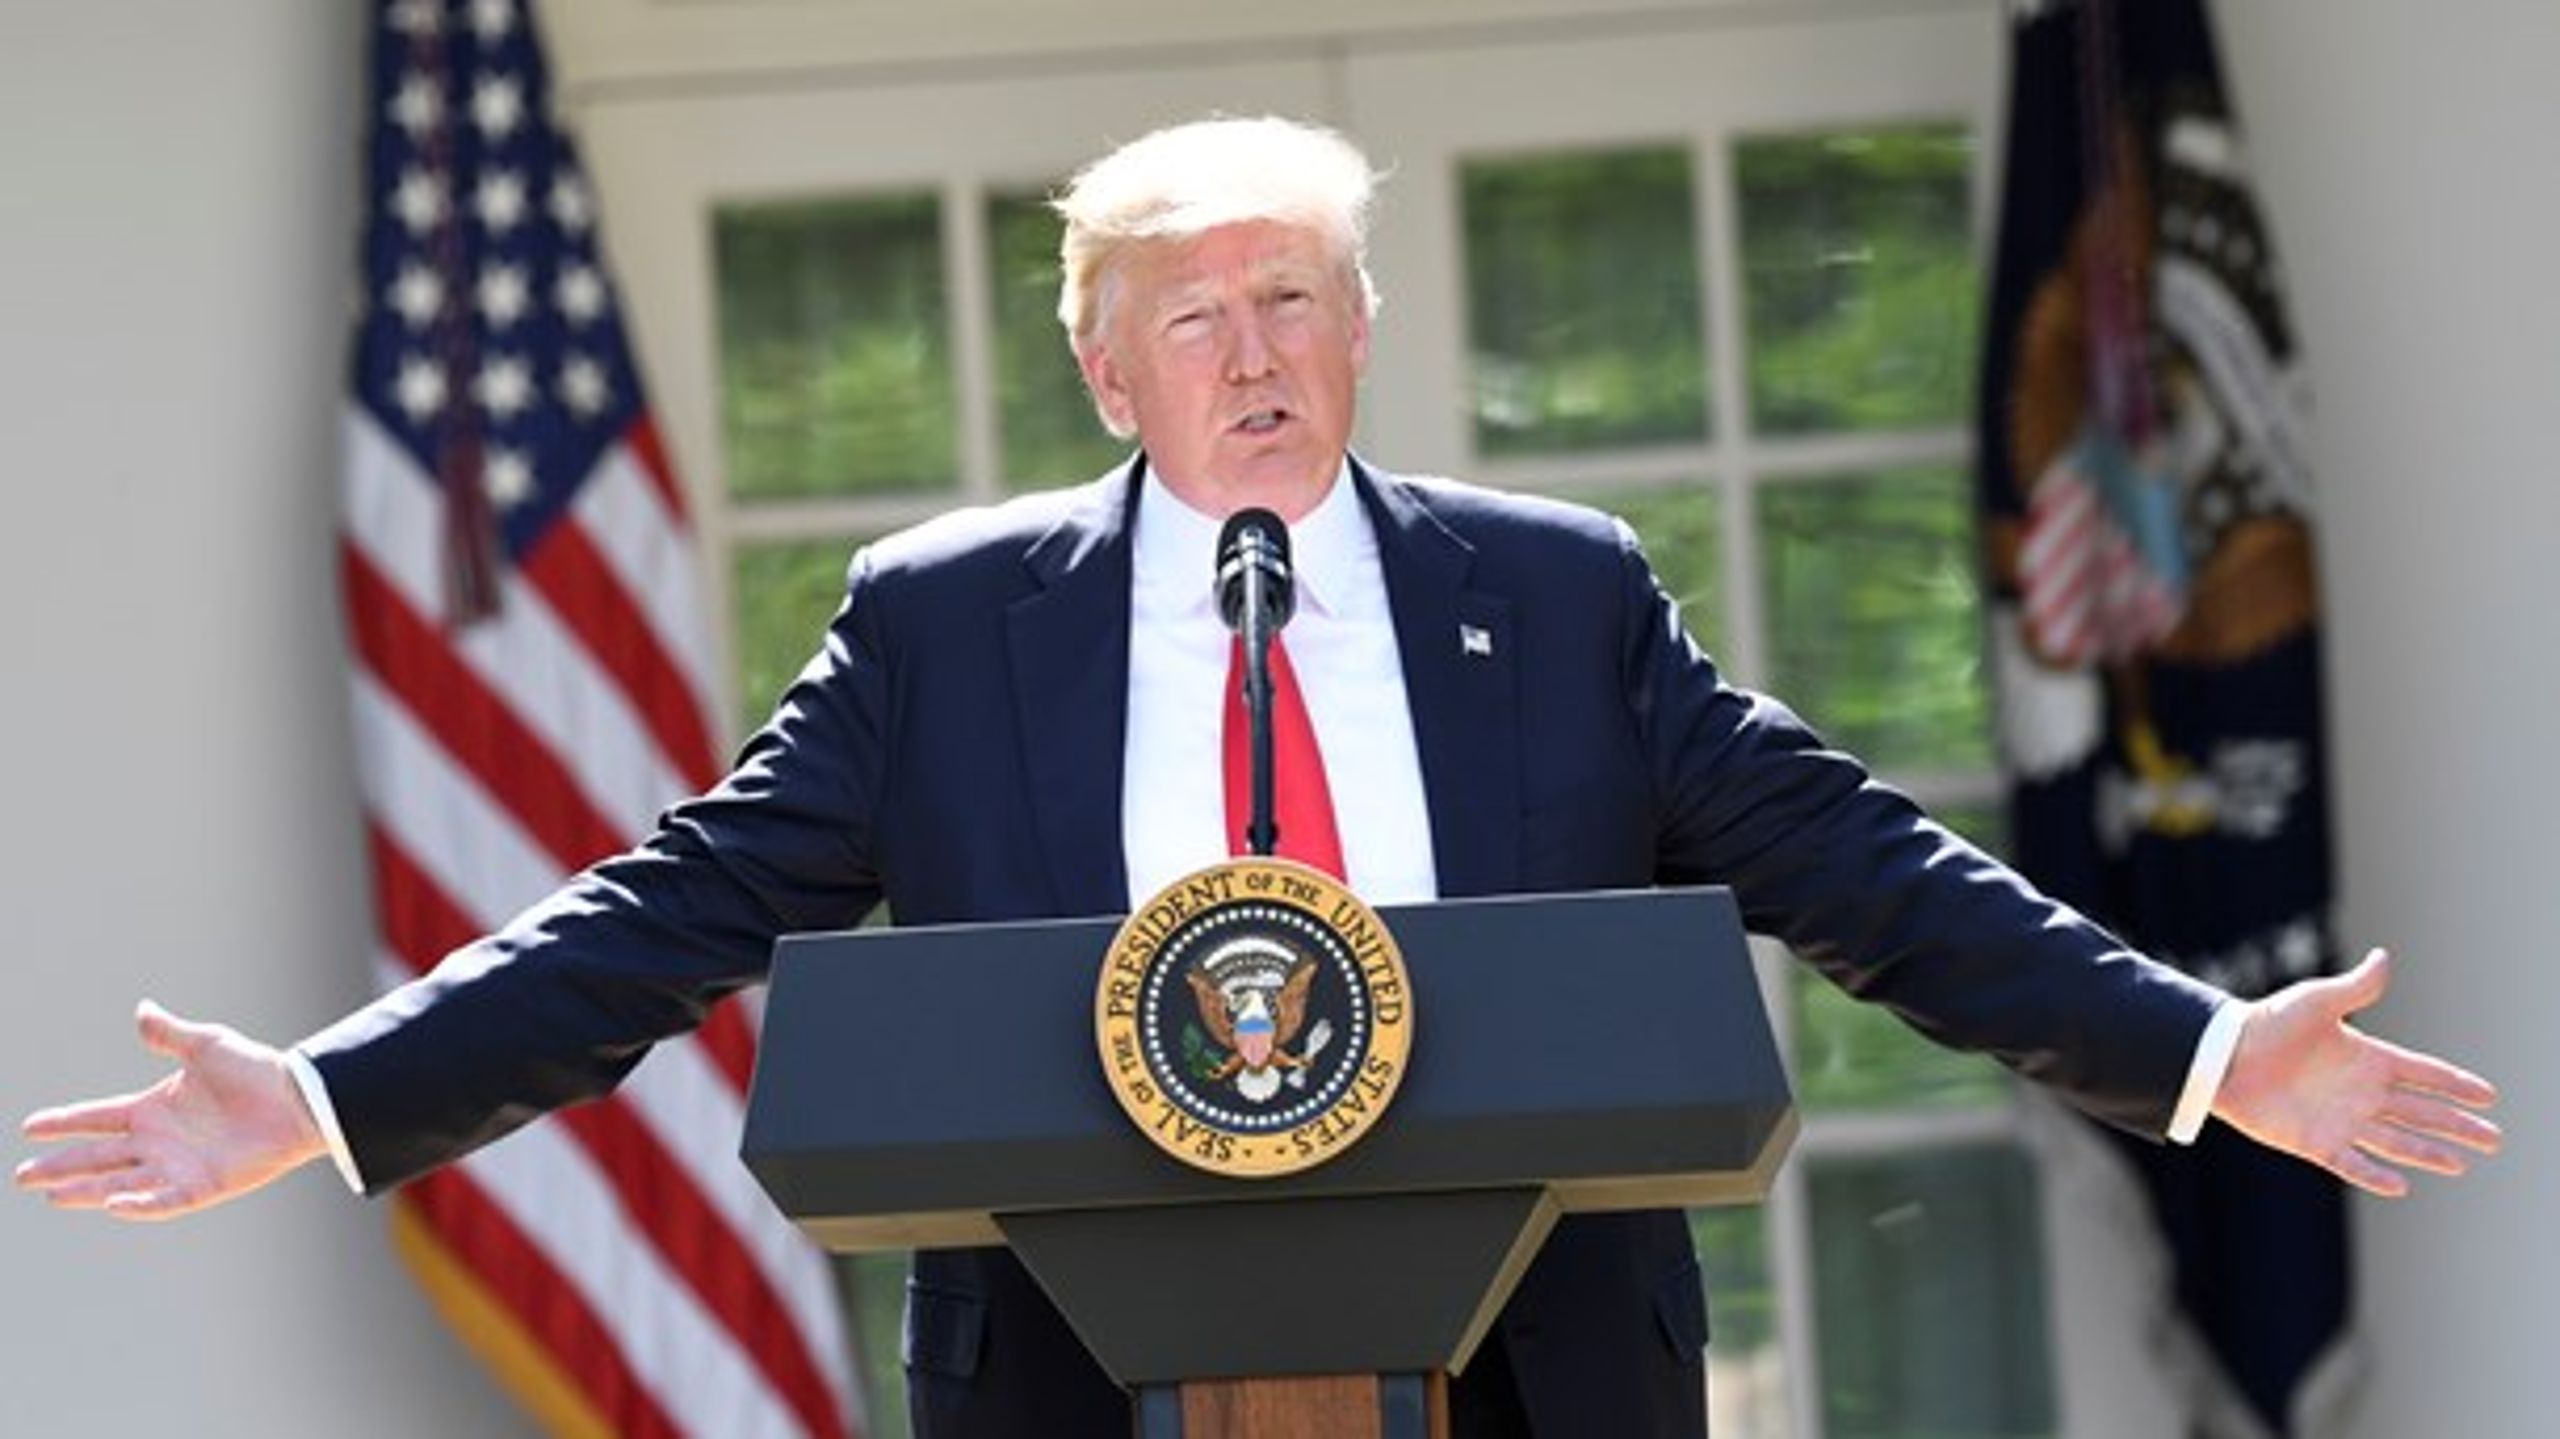 Præsident Donald Trump under talen, hvor han meddelte, at&nbsp;han vil genforhandle eller trække USA ud af Paris-klimaaftalen.